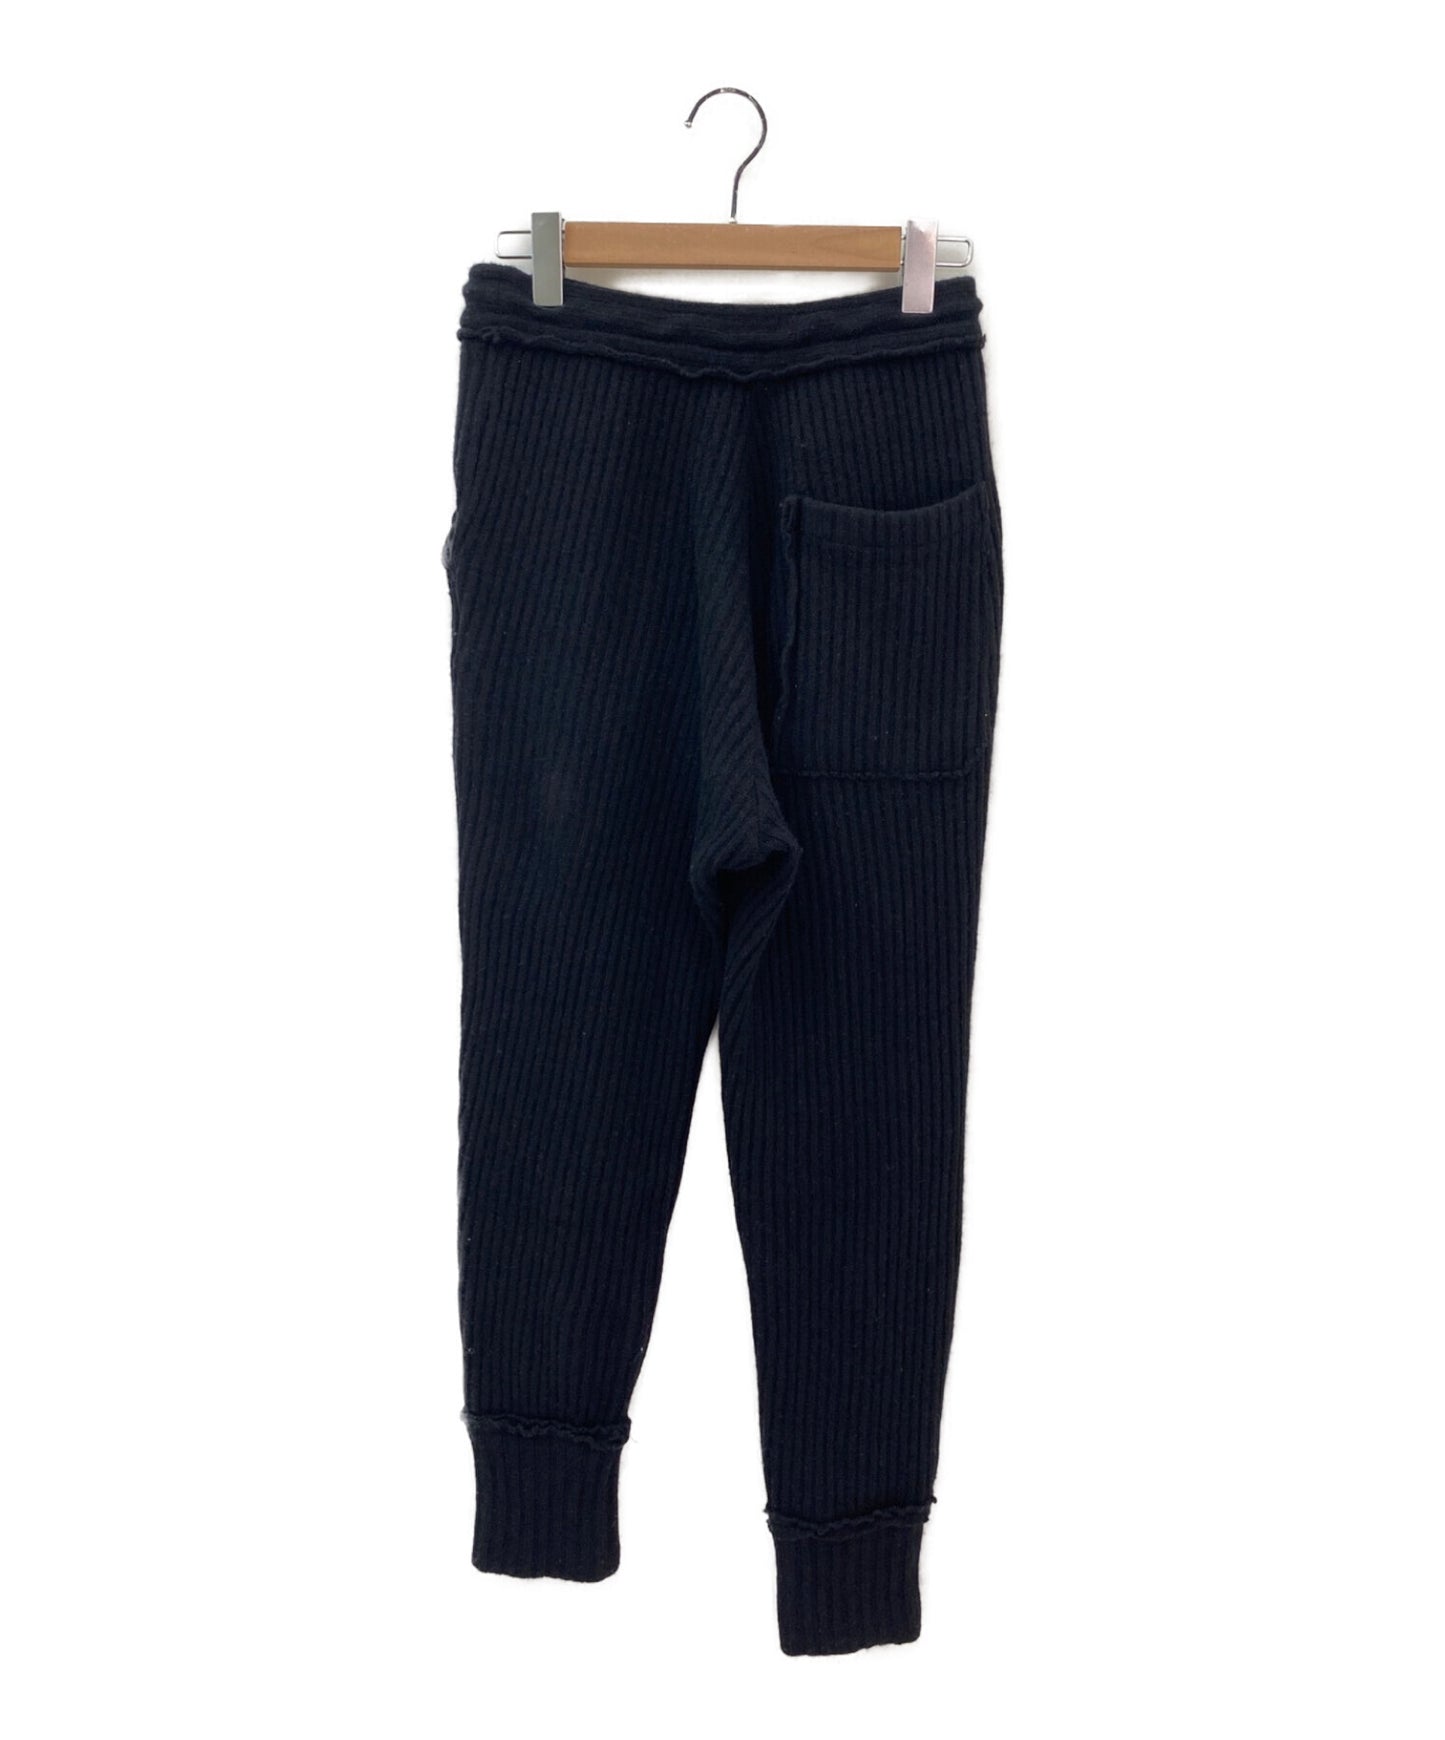 Y Wool Nylon ของ Y ไม่สม่ำเสมอกางเกงกางเกง/กางเกงถัก/กางเกงขายาว YE-T09-161-2